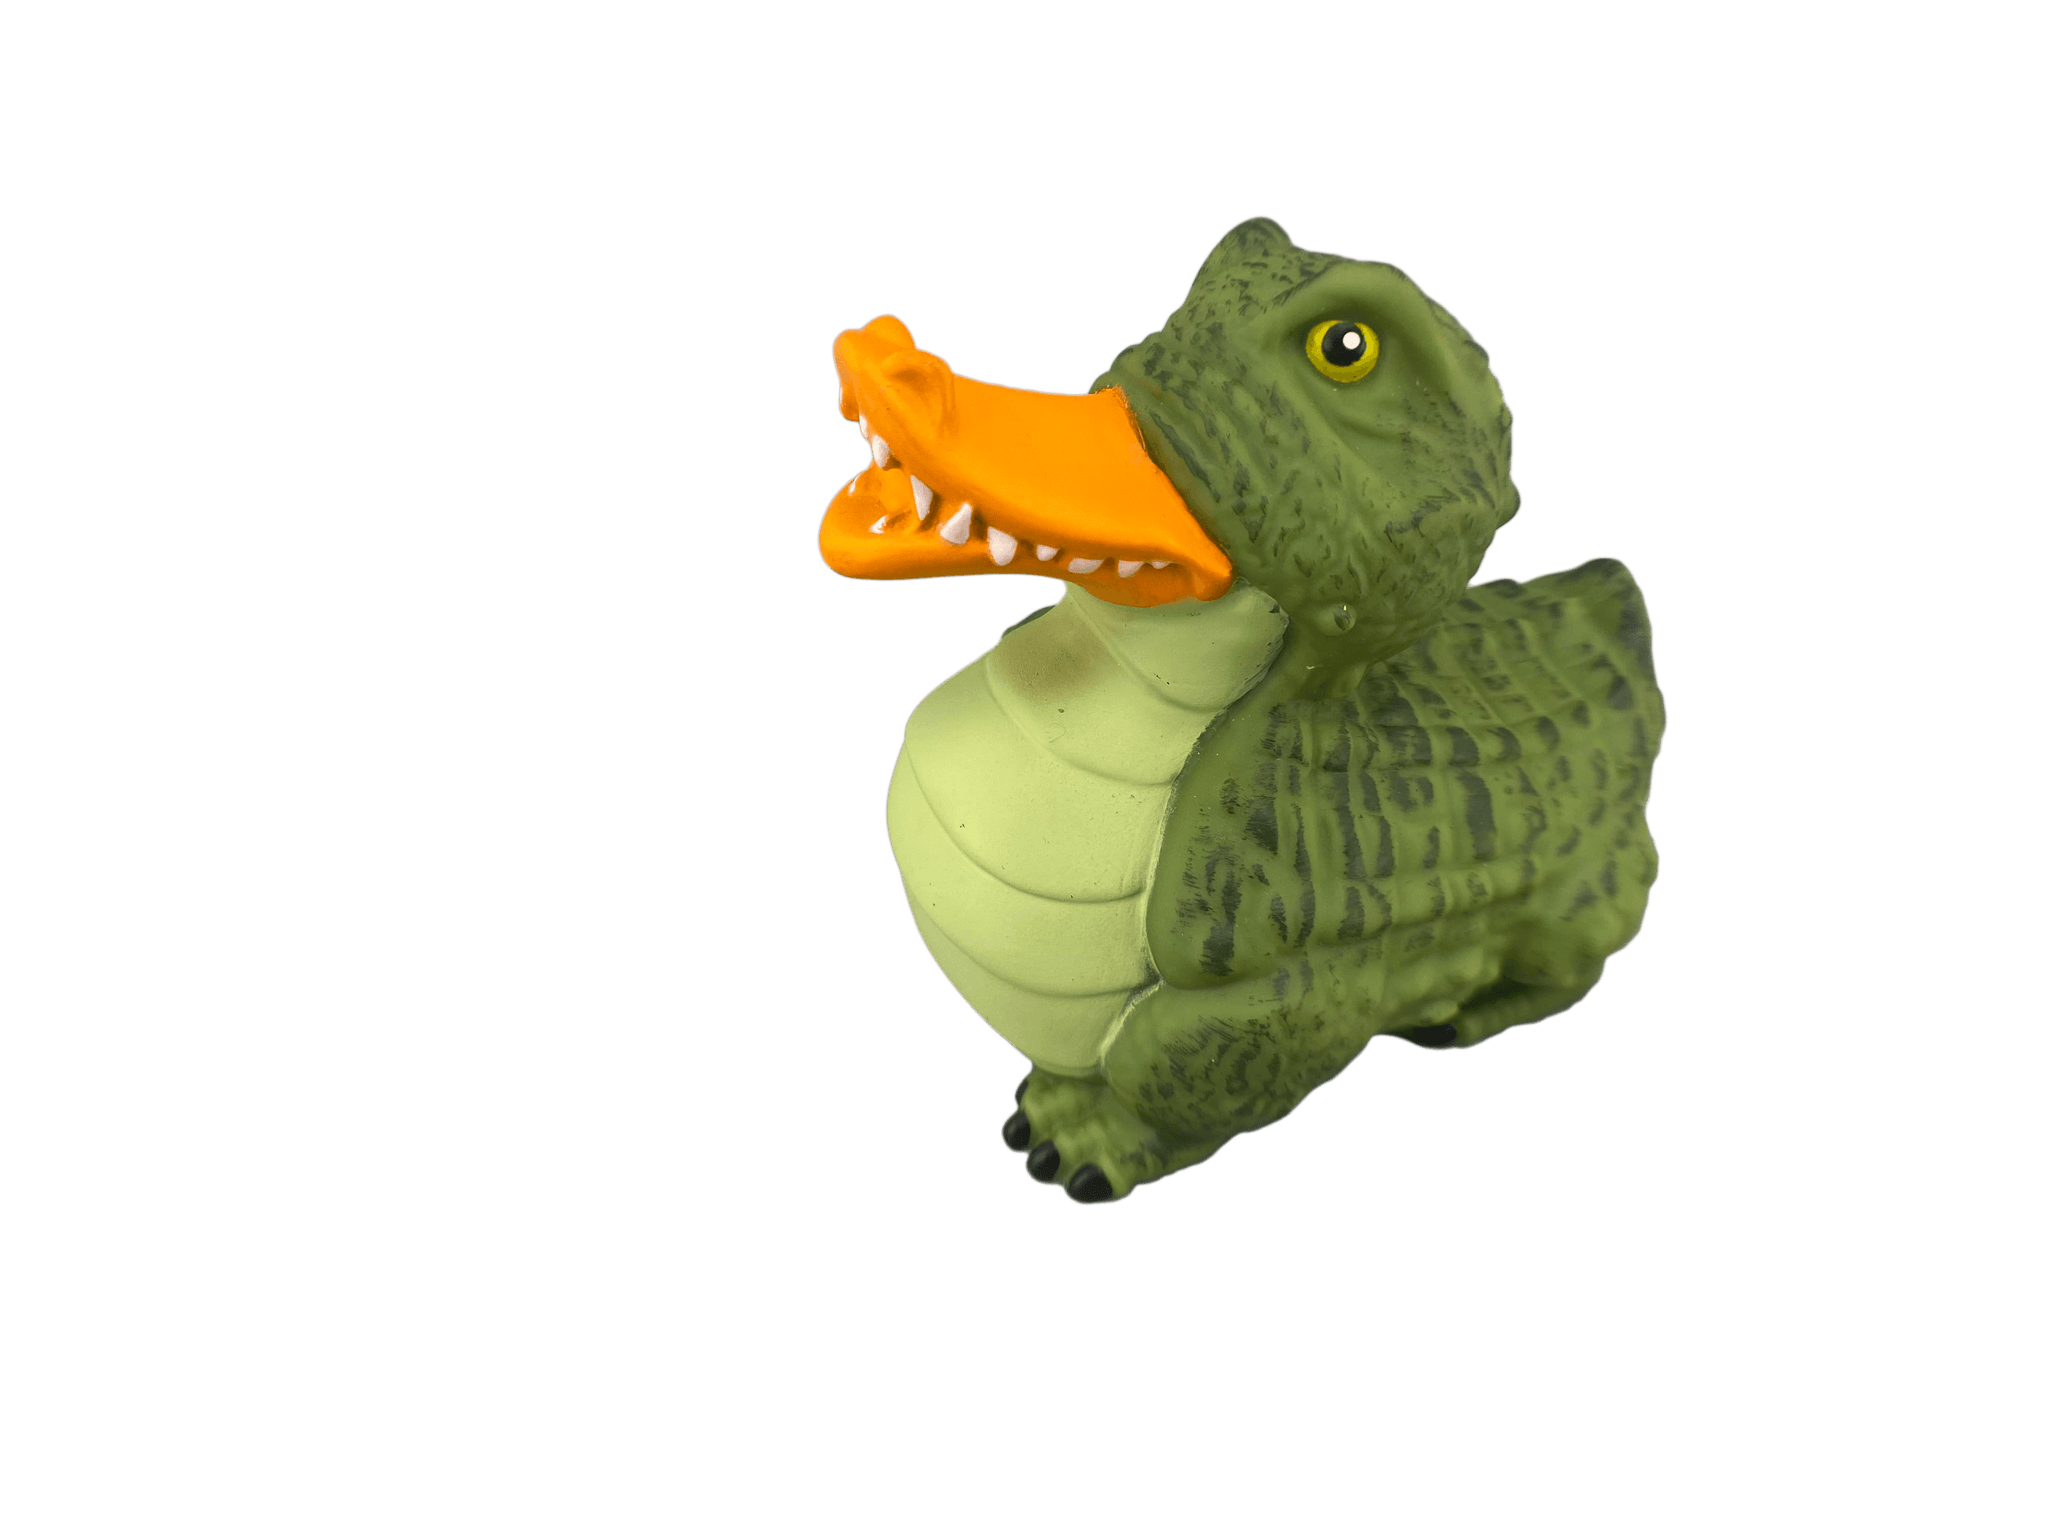 alligator rubber duckie